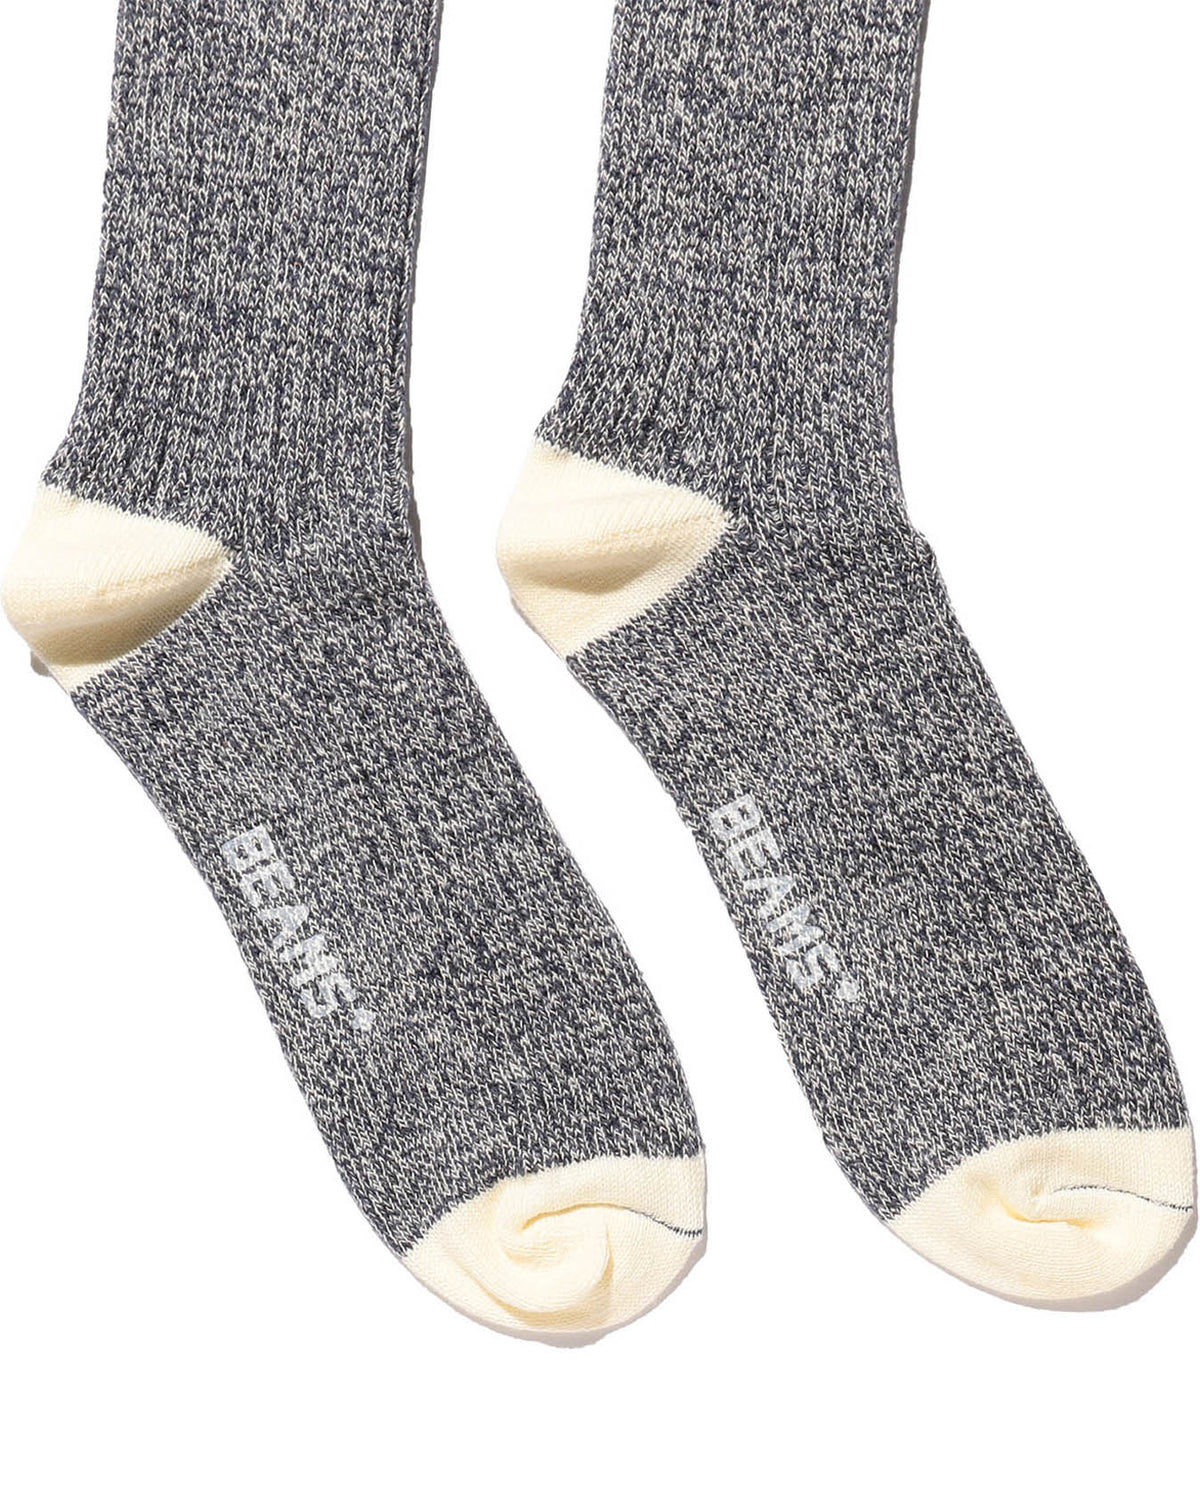 Rag Socks - Oatmeal